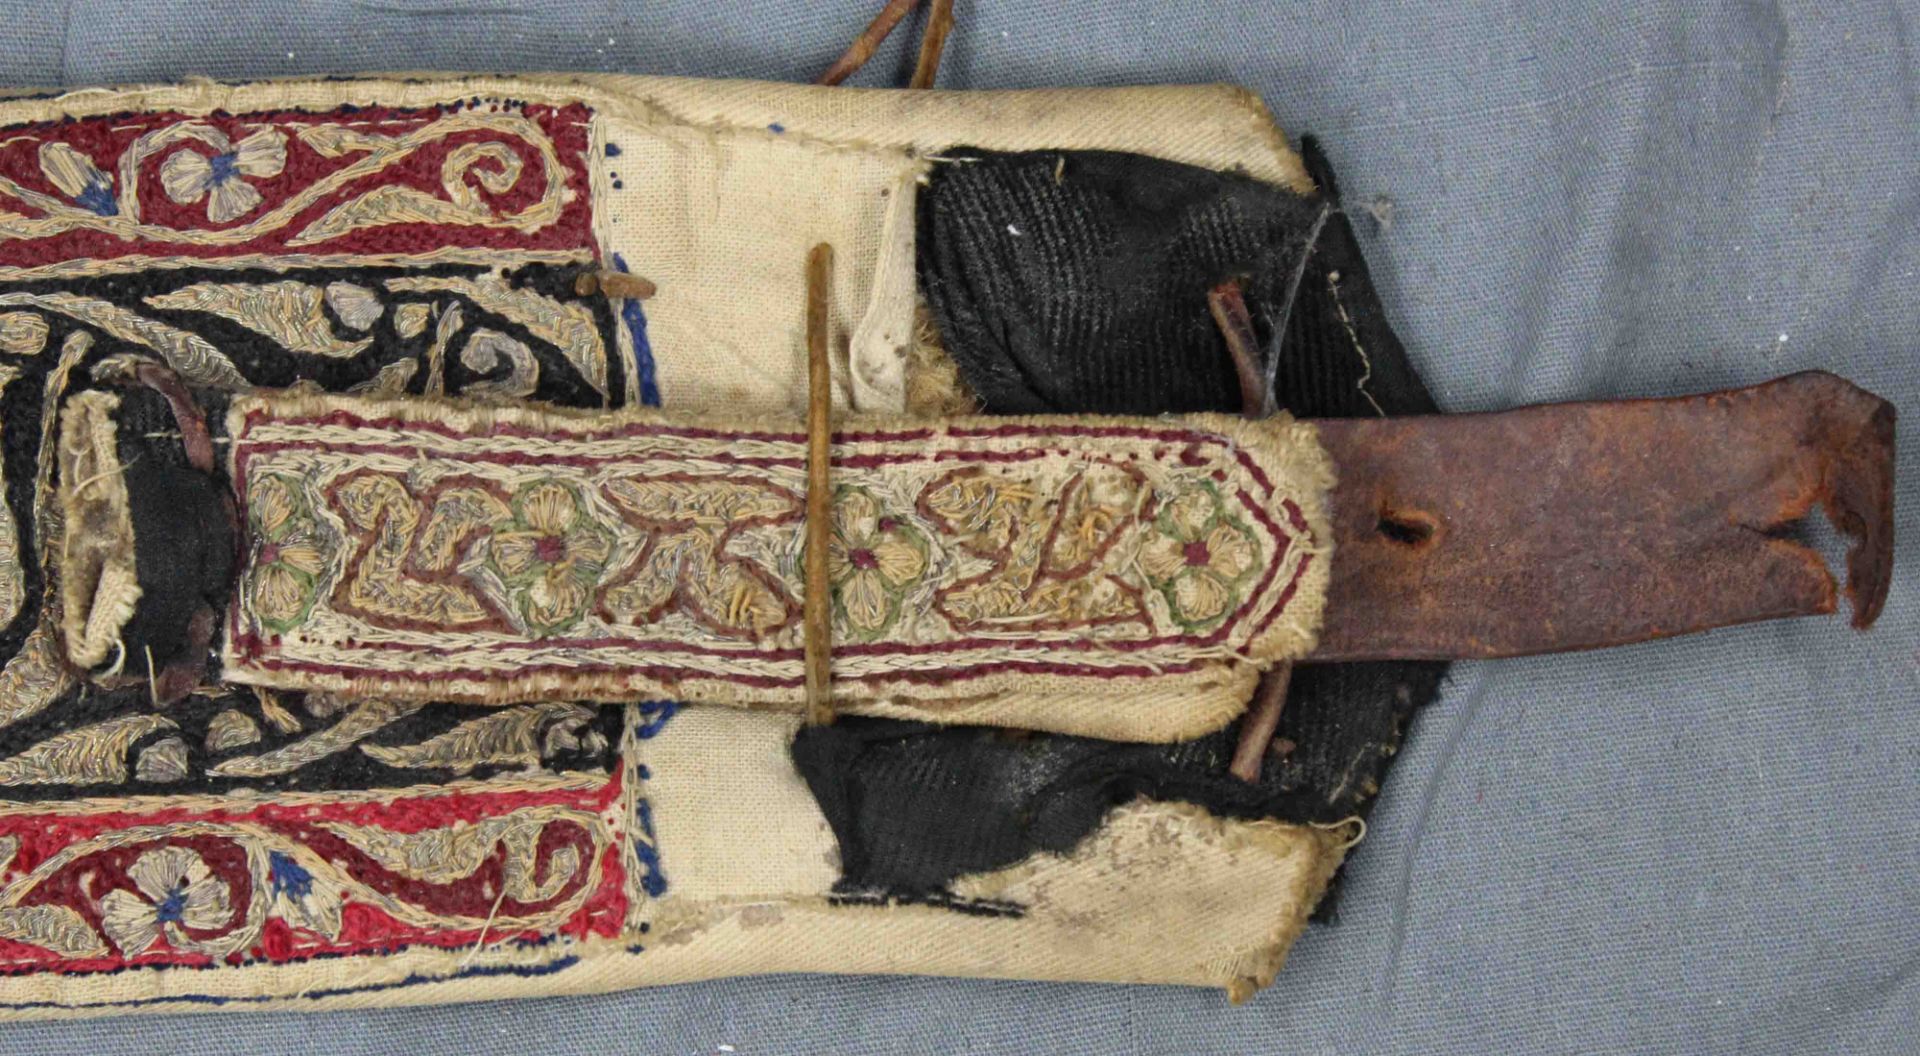 Jambia curved dagger. Arabia. Antique, around 150-250 years old. - Bild 8 aus 10